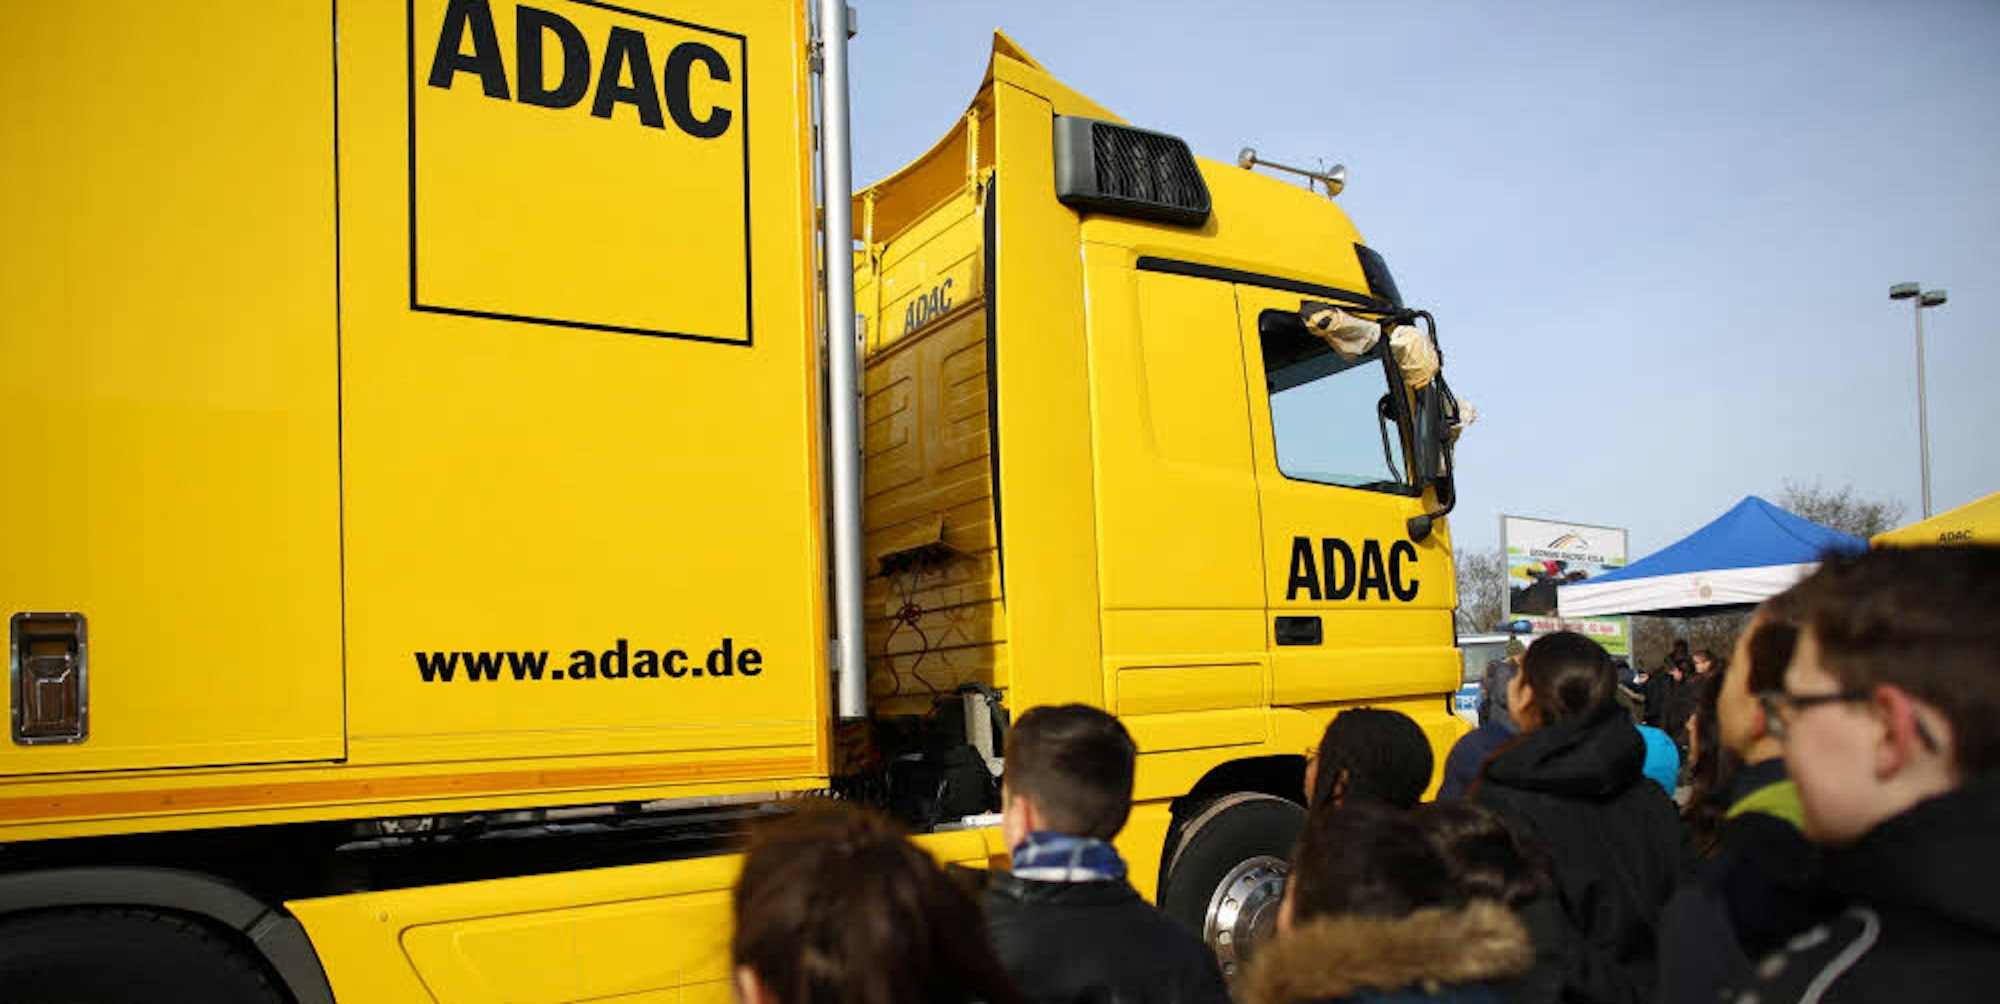 Bei einer Infoveranstaltung im März in Köln konnten sich Schüler in den Toten Winkel eines ADAC-Lkw stellen. Die Spiegel, die den „blinden Fleck“ einsehbar machen, wurden dabei abgeklebt. Das kritisiert der ADFC massiv.